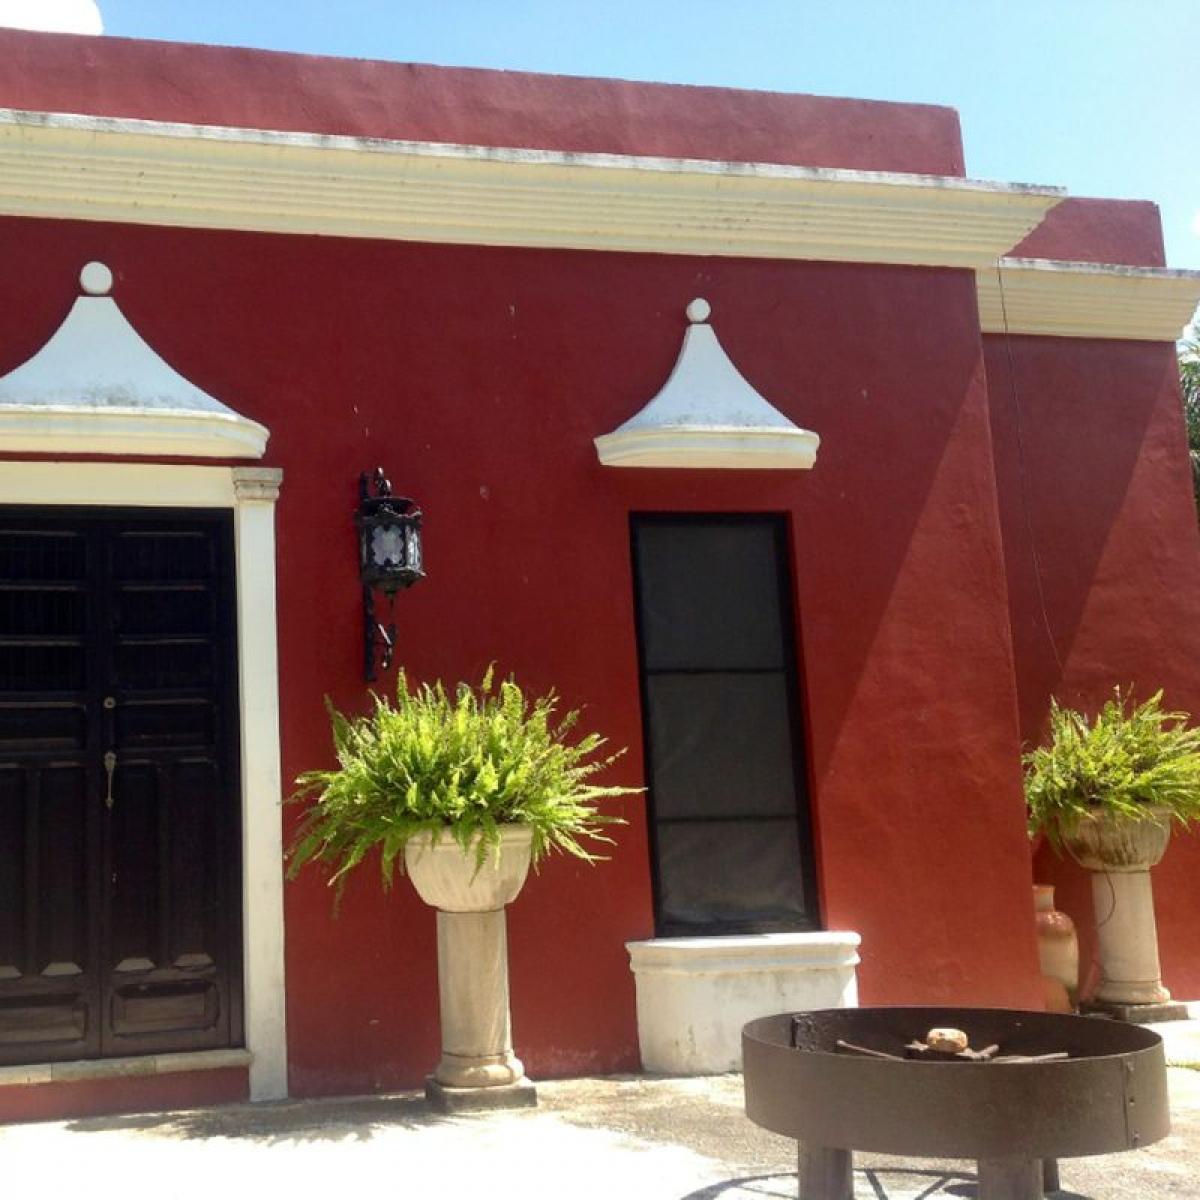 Picture of Development Site For Sale in Yucatan, Yucatan, Mexico